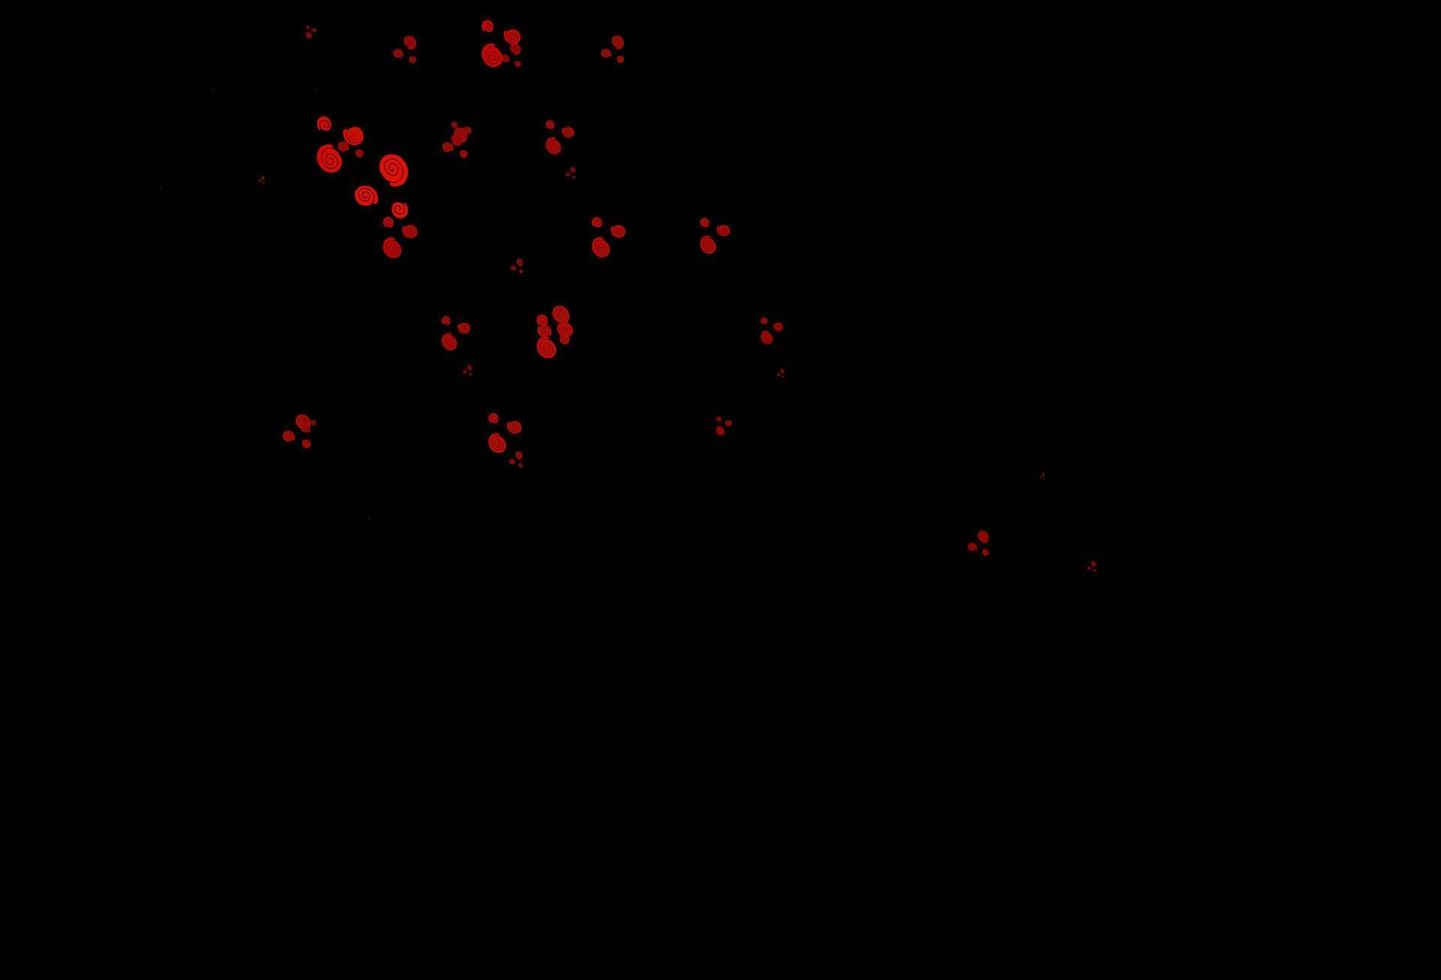 modello vettoriale rosso scuro con forme di bolle.